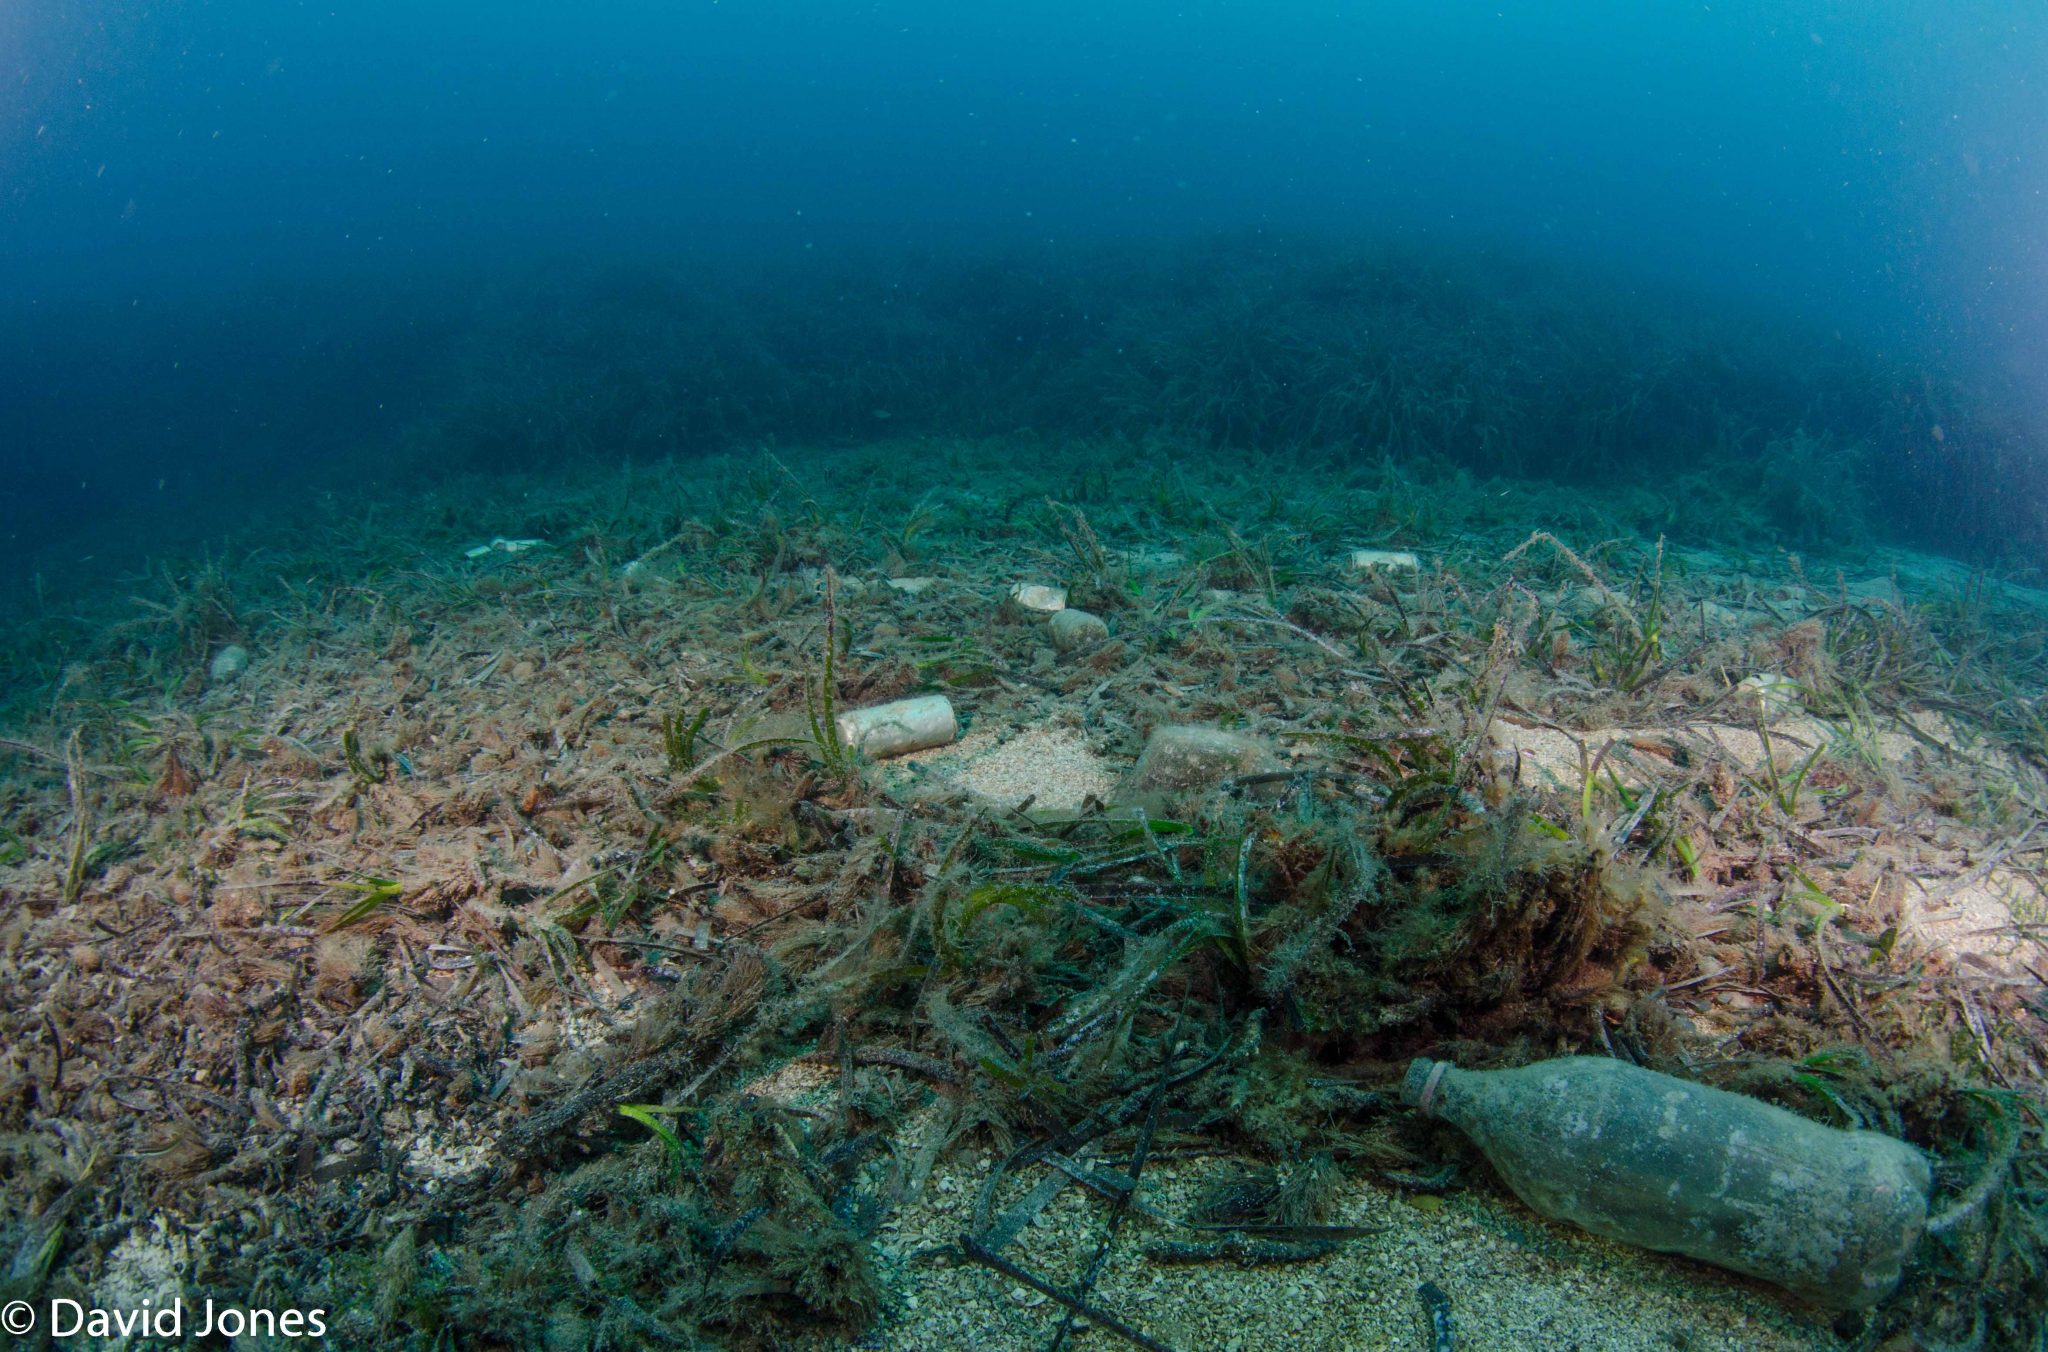 New Map Reveals Extent Of Ocean Plastic Just One Ocean